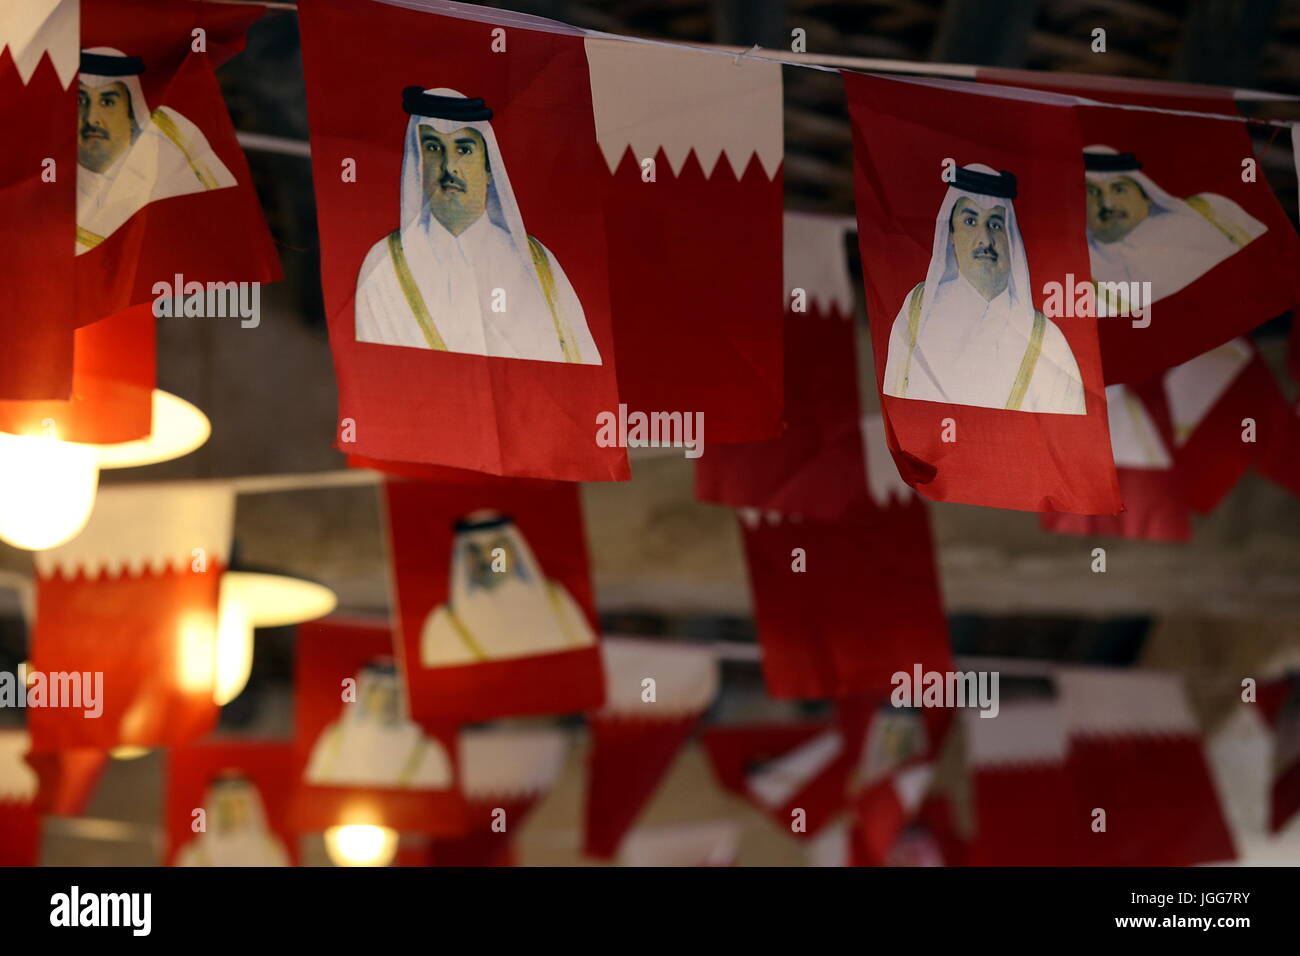 DOHA, Katar - 6. Juli 2017: Nationales Fahnen gedruckt mit Bildern der Qatari Emir Scheich Tamim bin Hamad al-Thani über die Decke aufgereiht sind im Souq Waqif-Markt während der diplomatischen Krise zwischen Katar und arabischen Nachbarstaaten Stockfoto